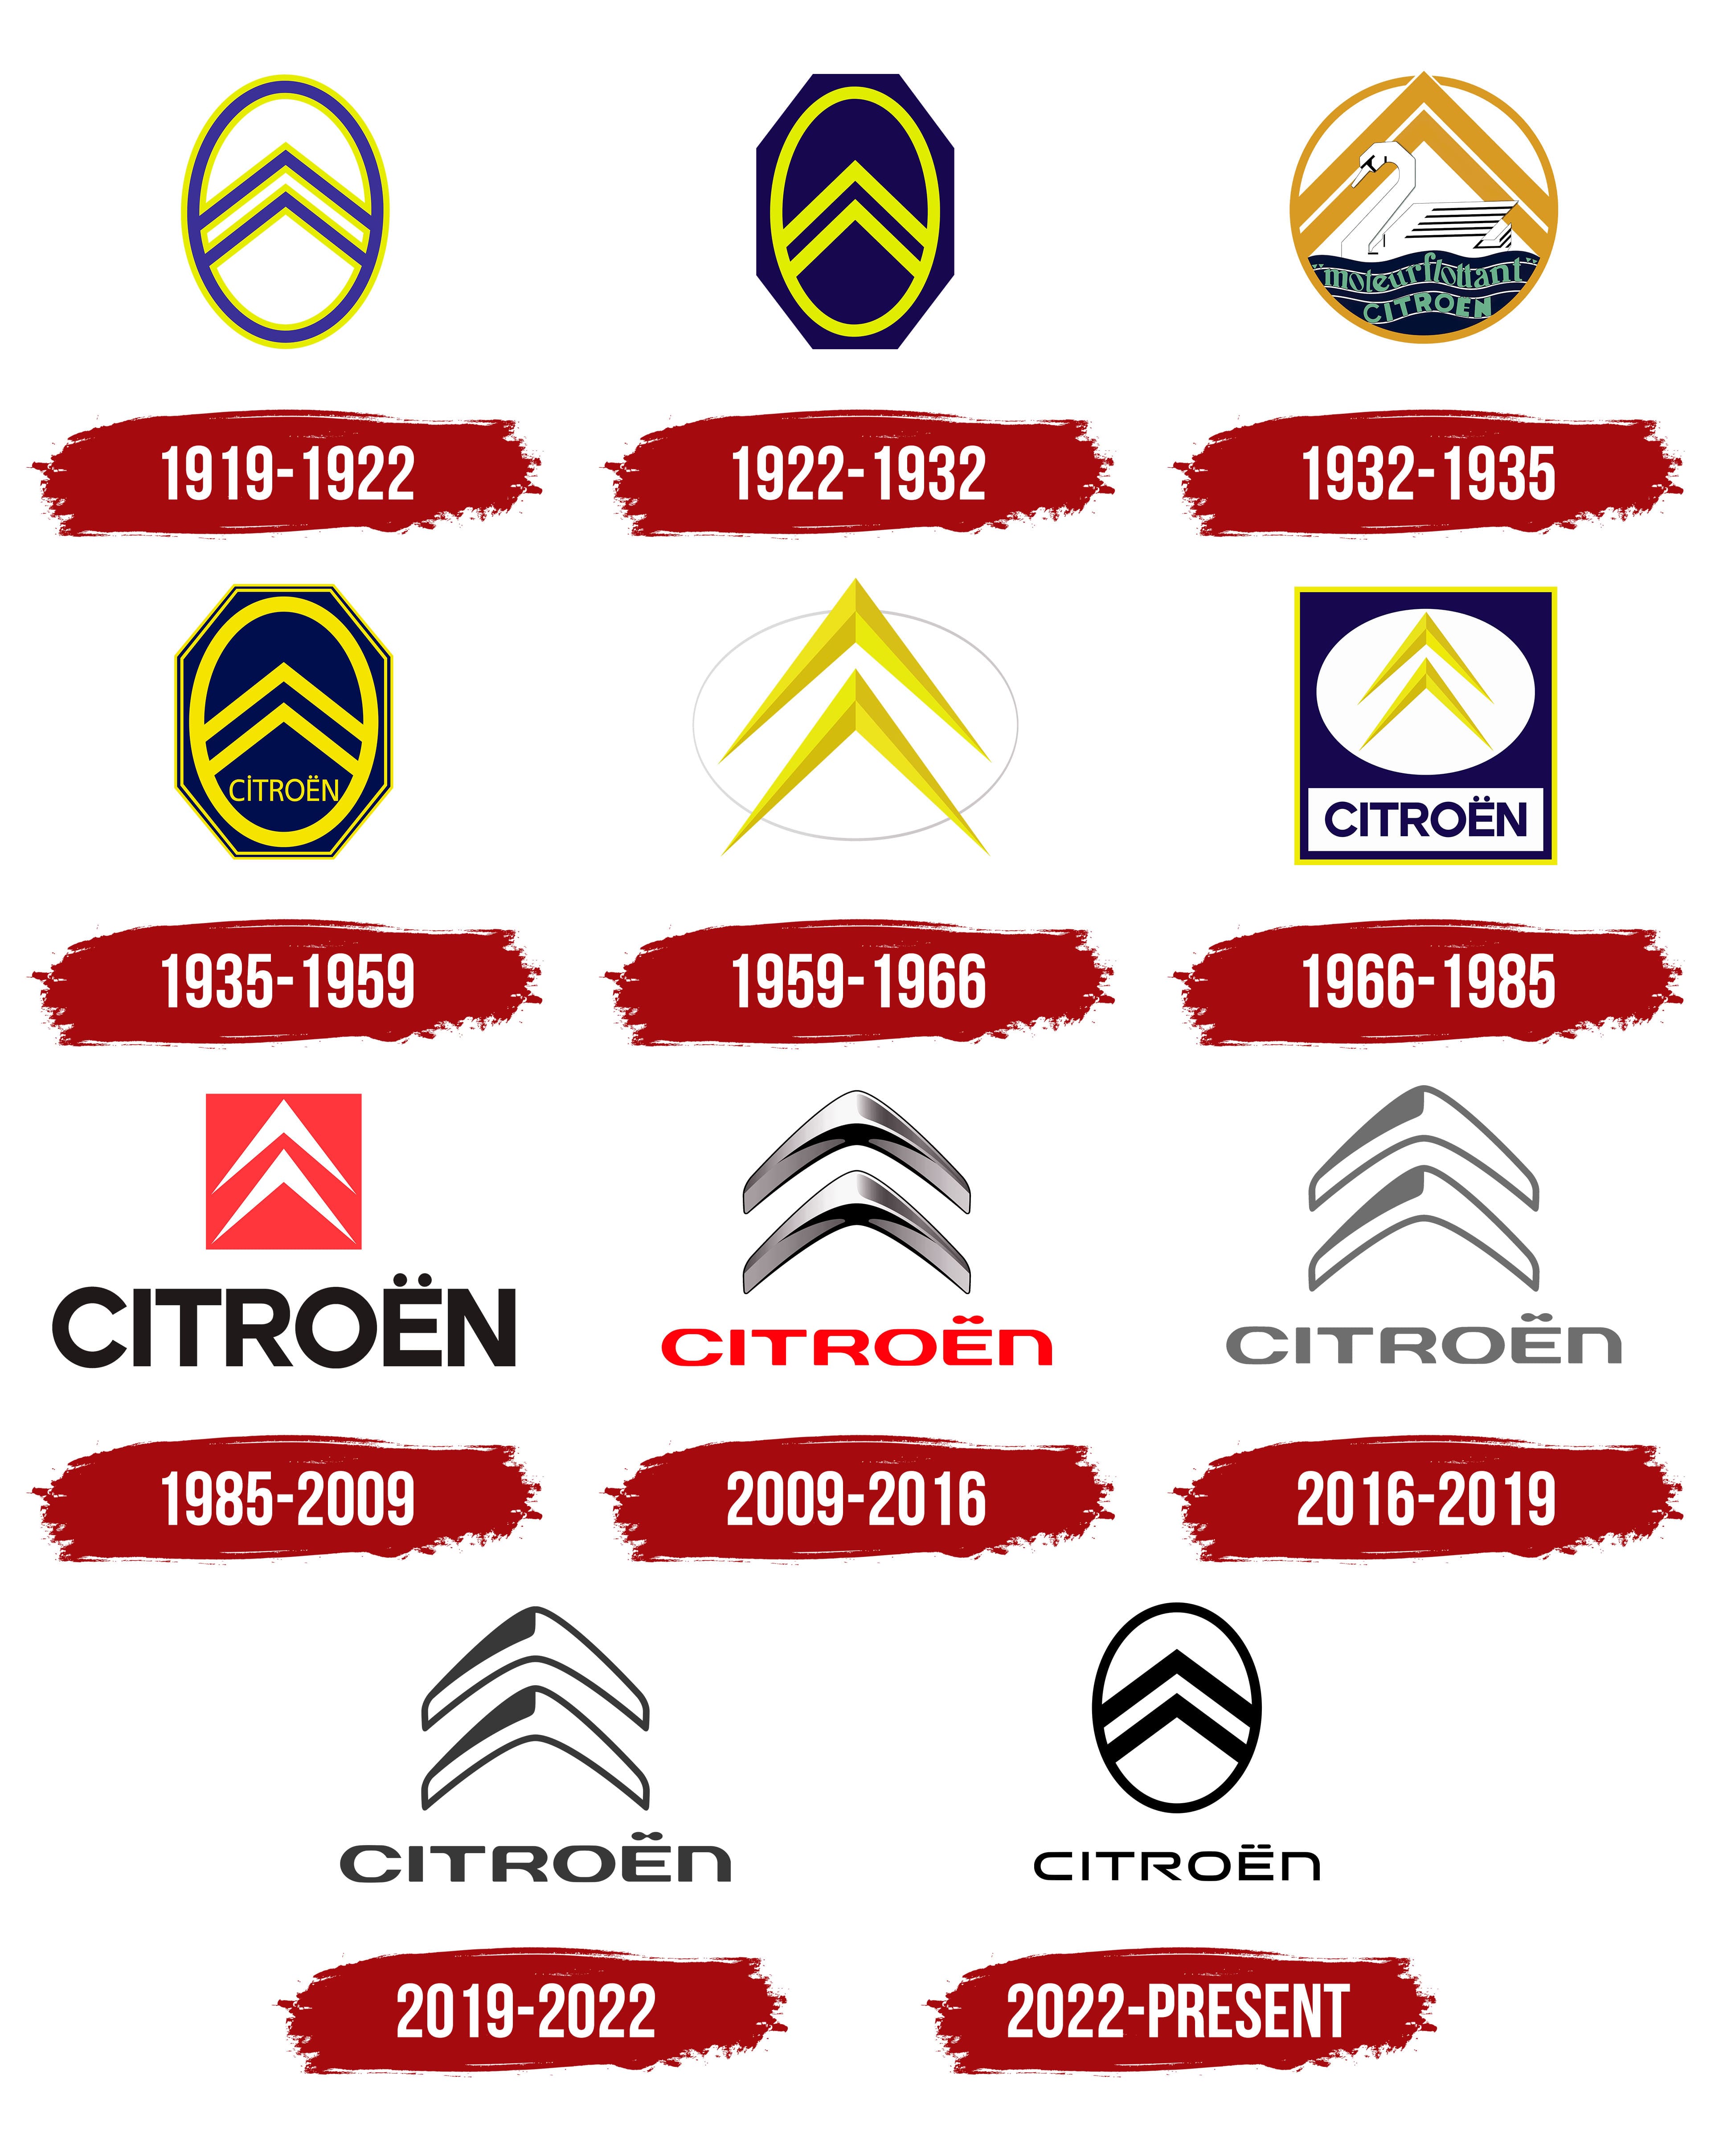 Citroën logo : histoire, signification et évolution, symbole